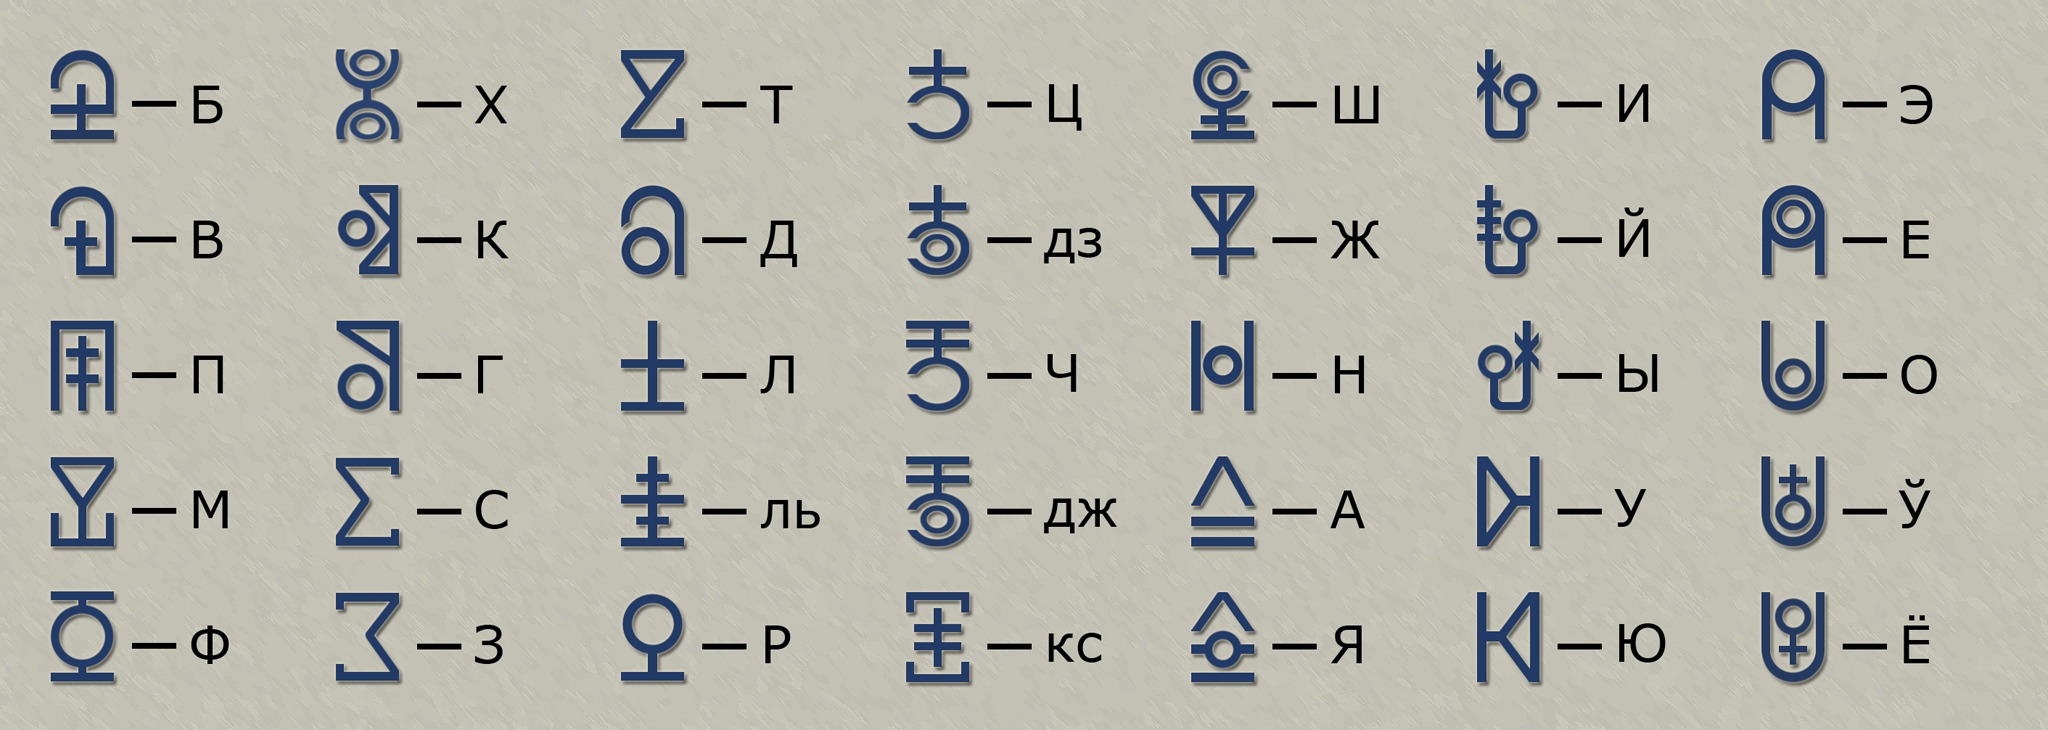 Cyrillic letters comparsion